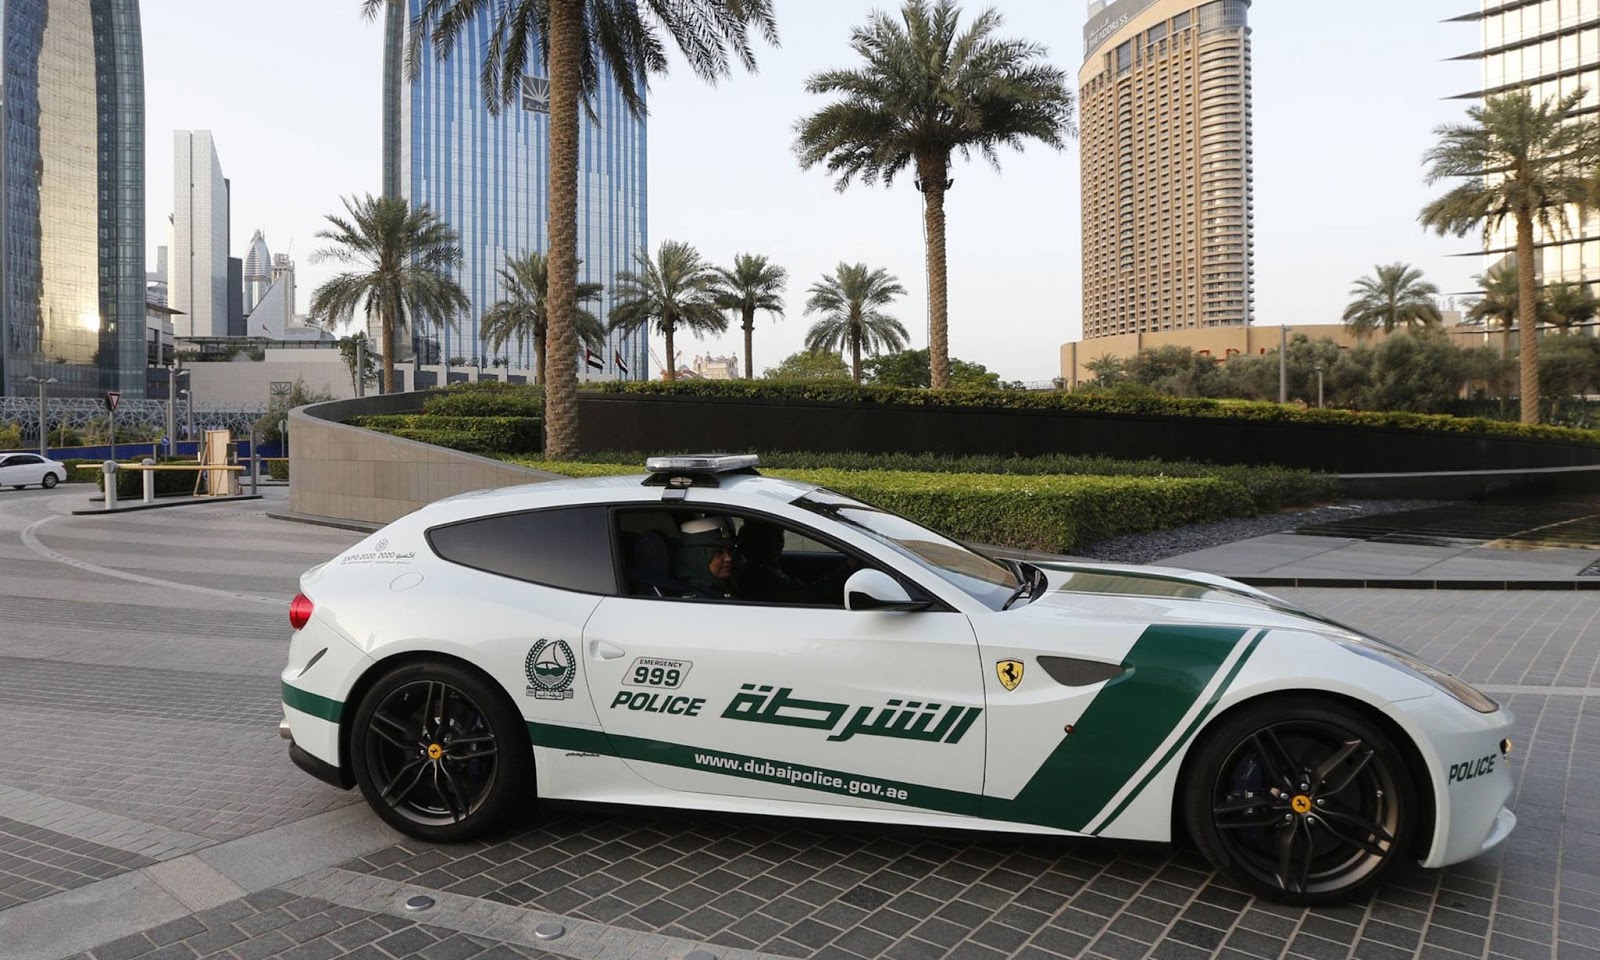 Uae cars. Ламборгини авентадор полиция Дубая. Полиция Дубая Бентли. Макларен полиция Дубай. Феррари полиция Дубай.